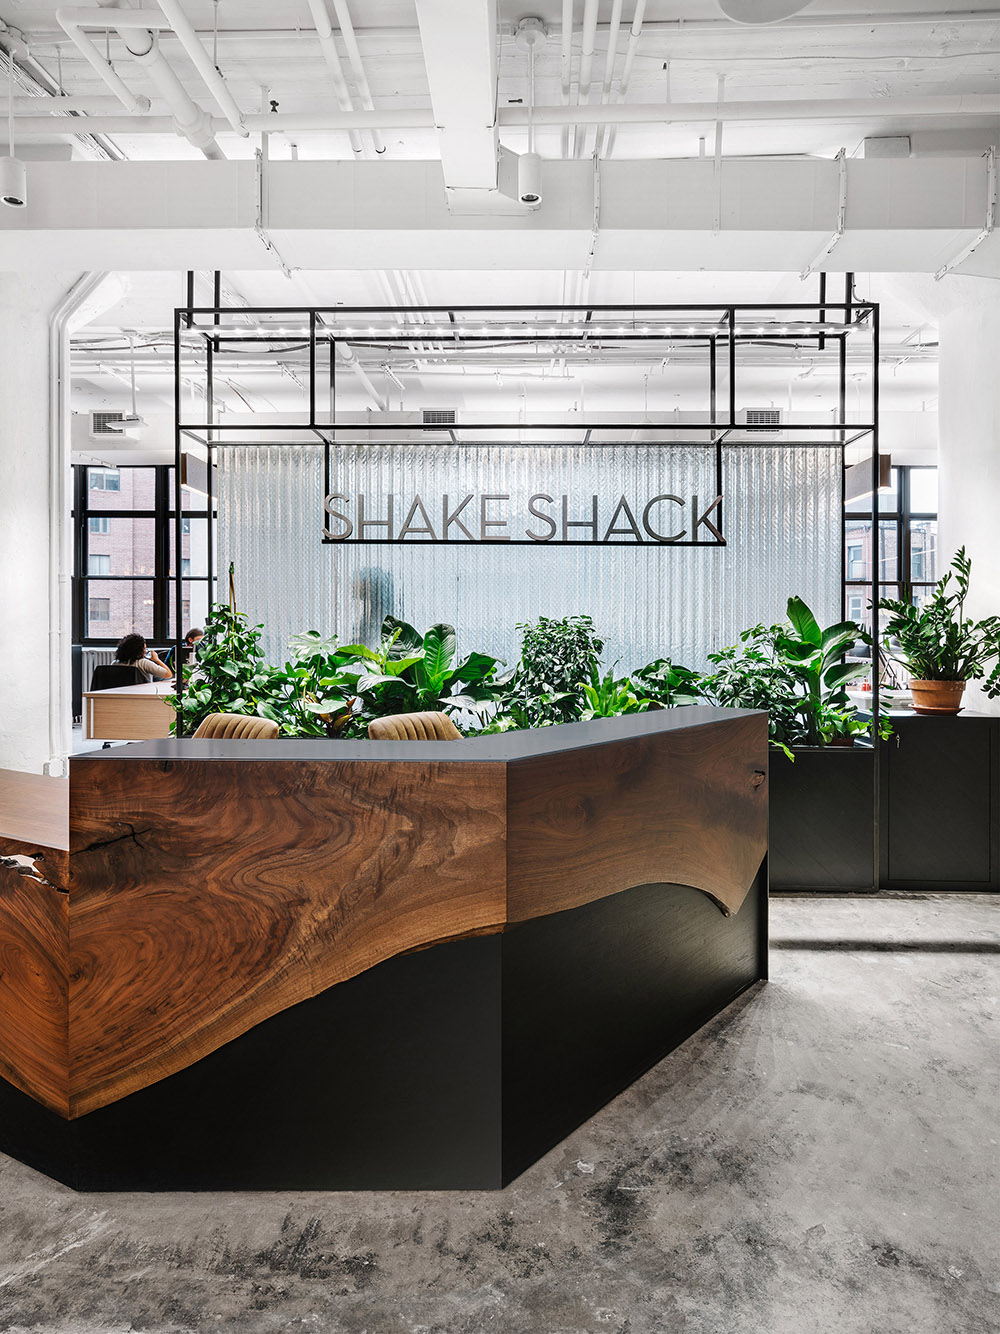 绿意盎然 餐饮巨头Shake Shack纽约总部设计欣赏